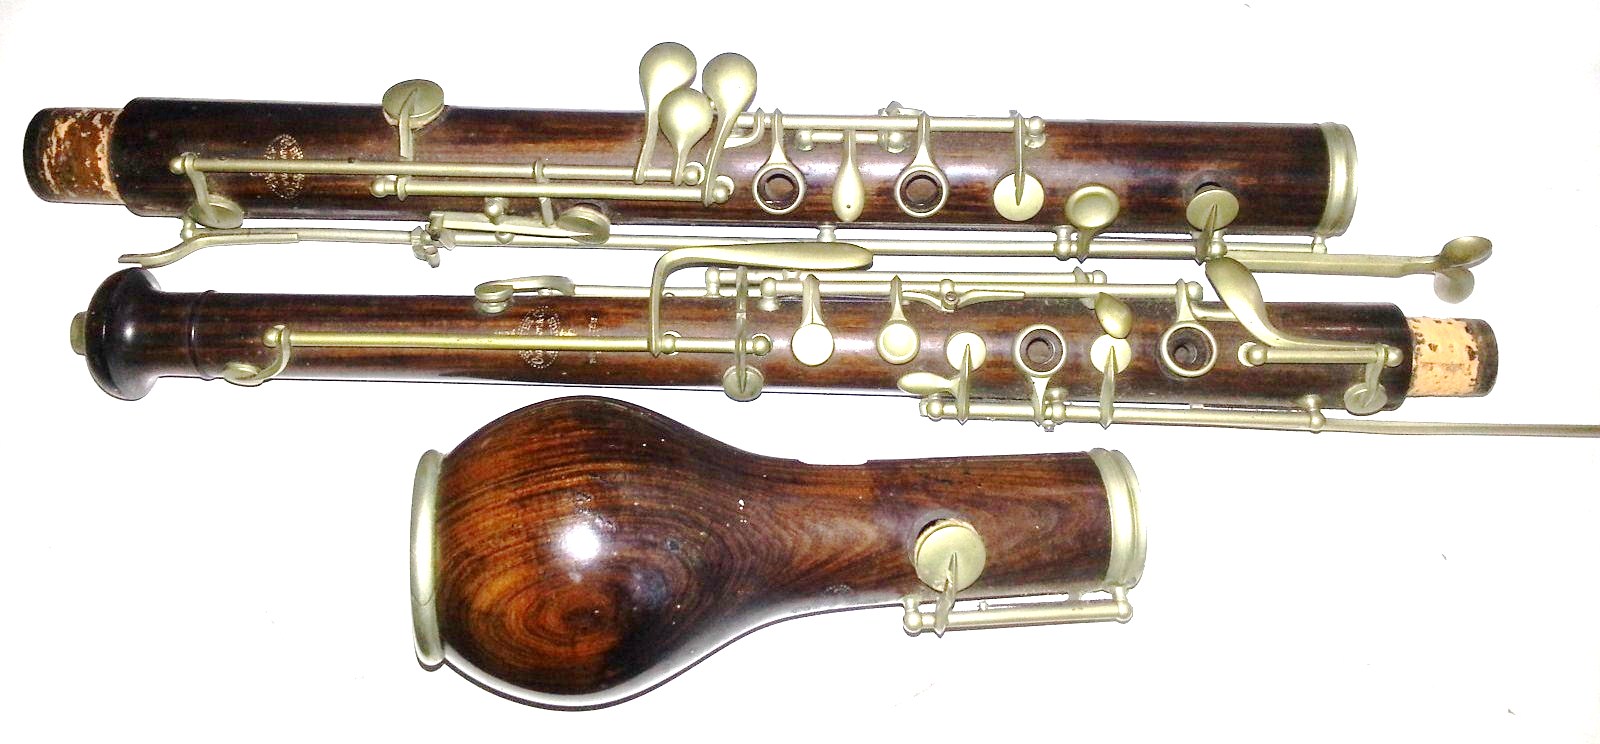 english horn vs oboe